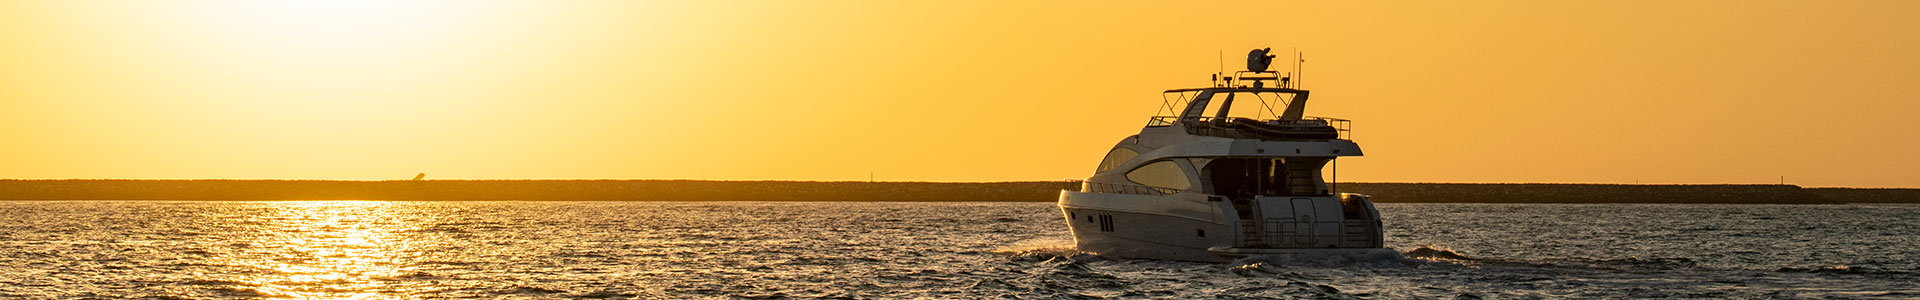 dubai sunset yacht cruise